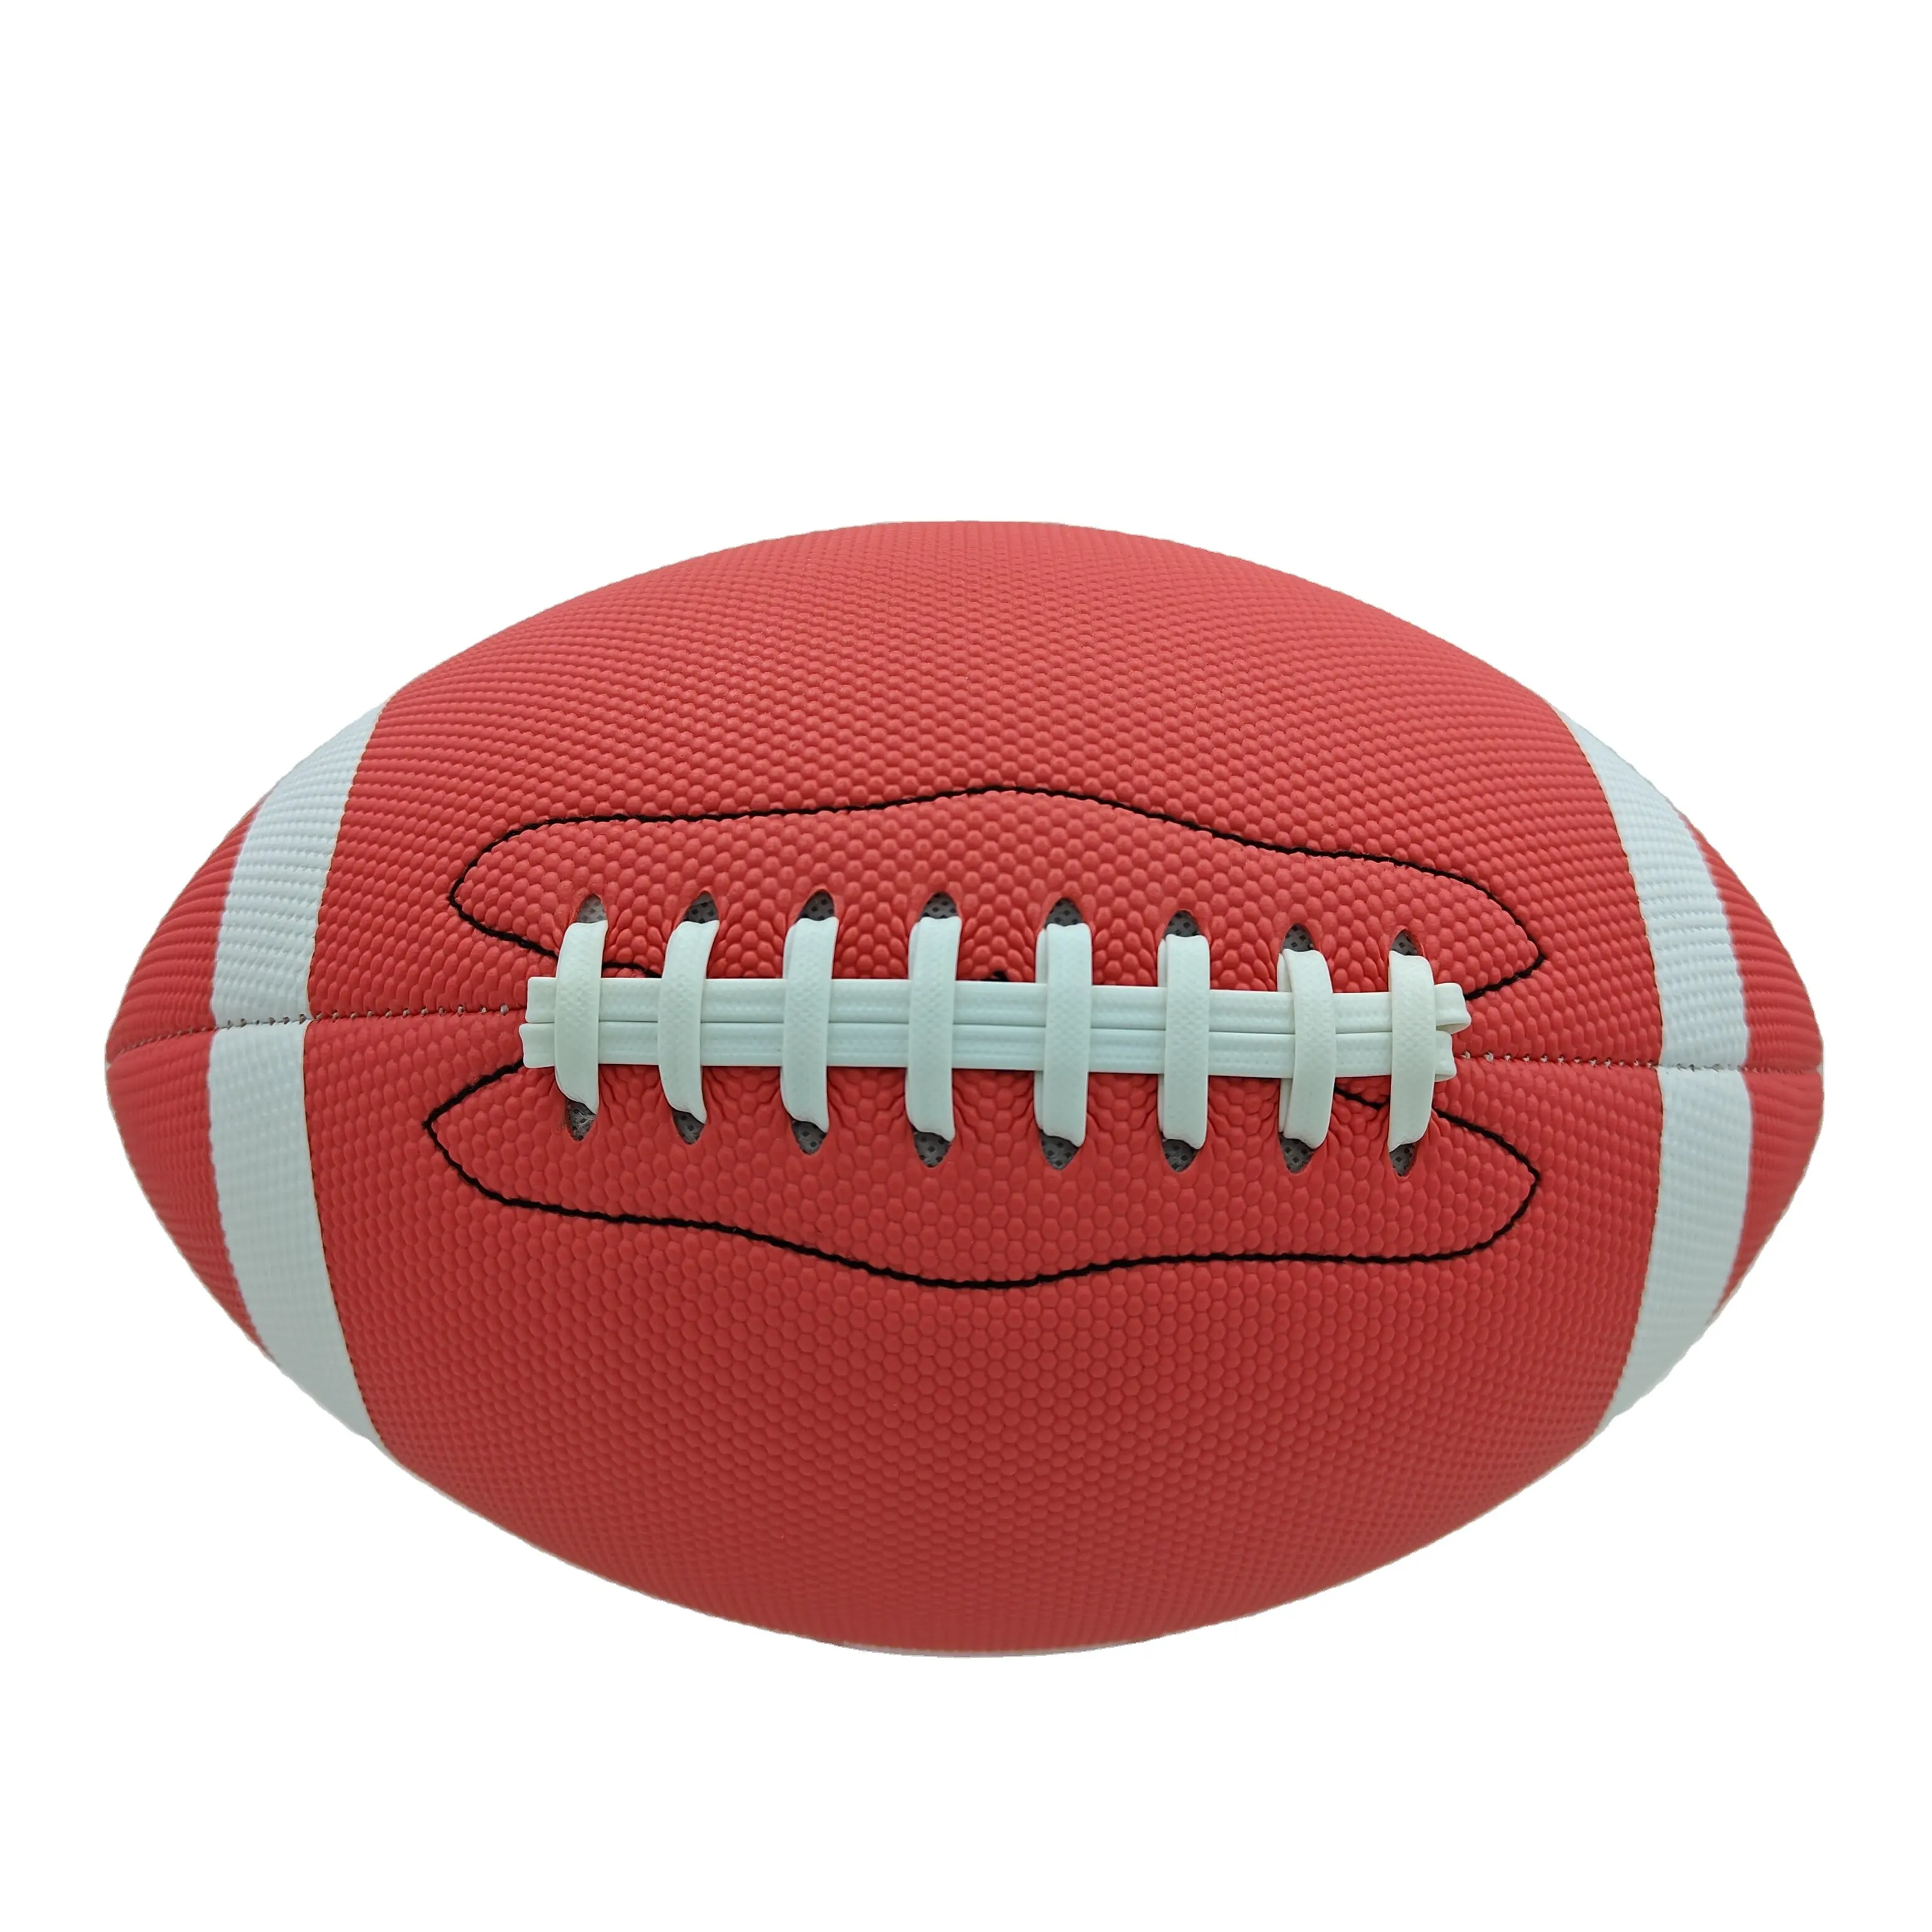 Ballons de football américain personnalisés de haute qualité, résistants à l'usure, en cuir PU imperméable, ballon de football américain de rugby